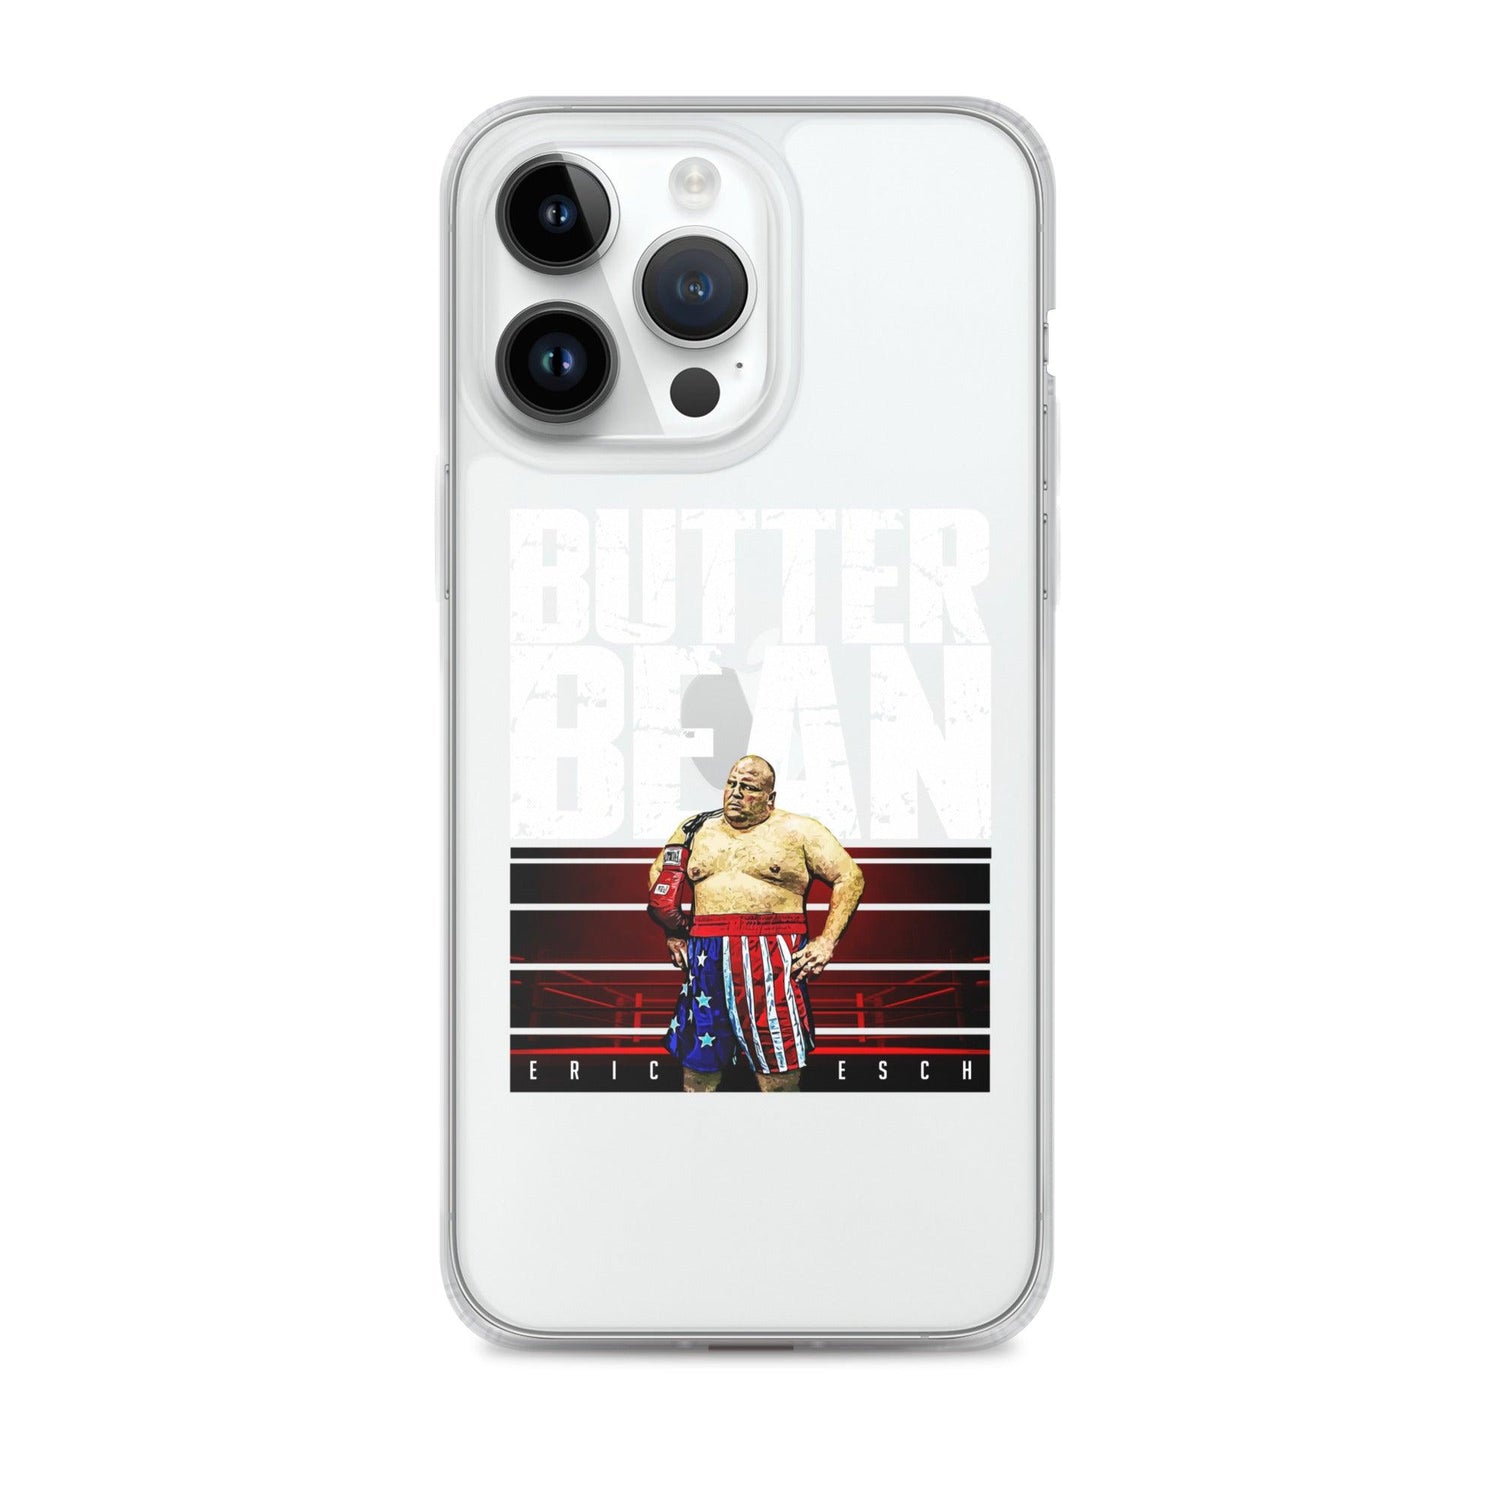 Butterbean "Fight Night" iPhone Case - Fan Arch